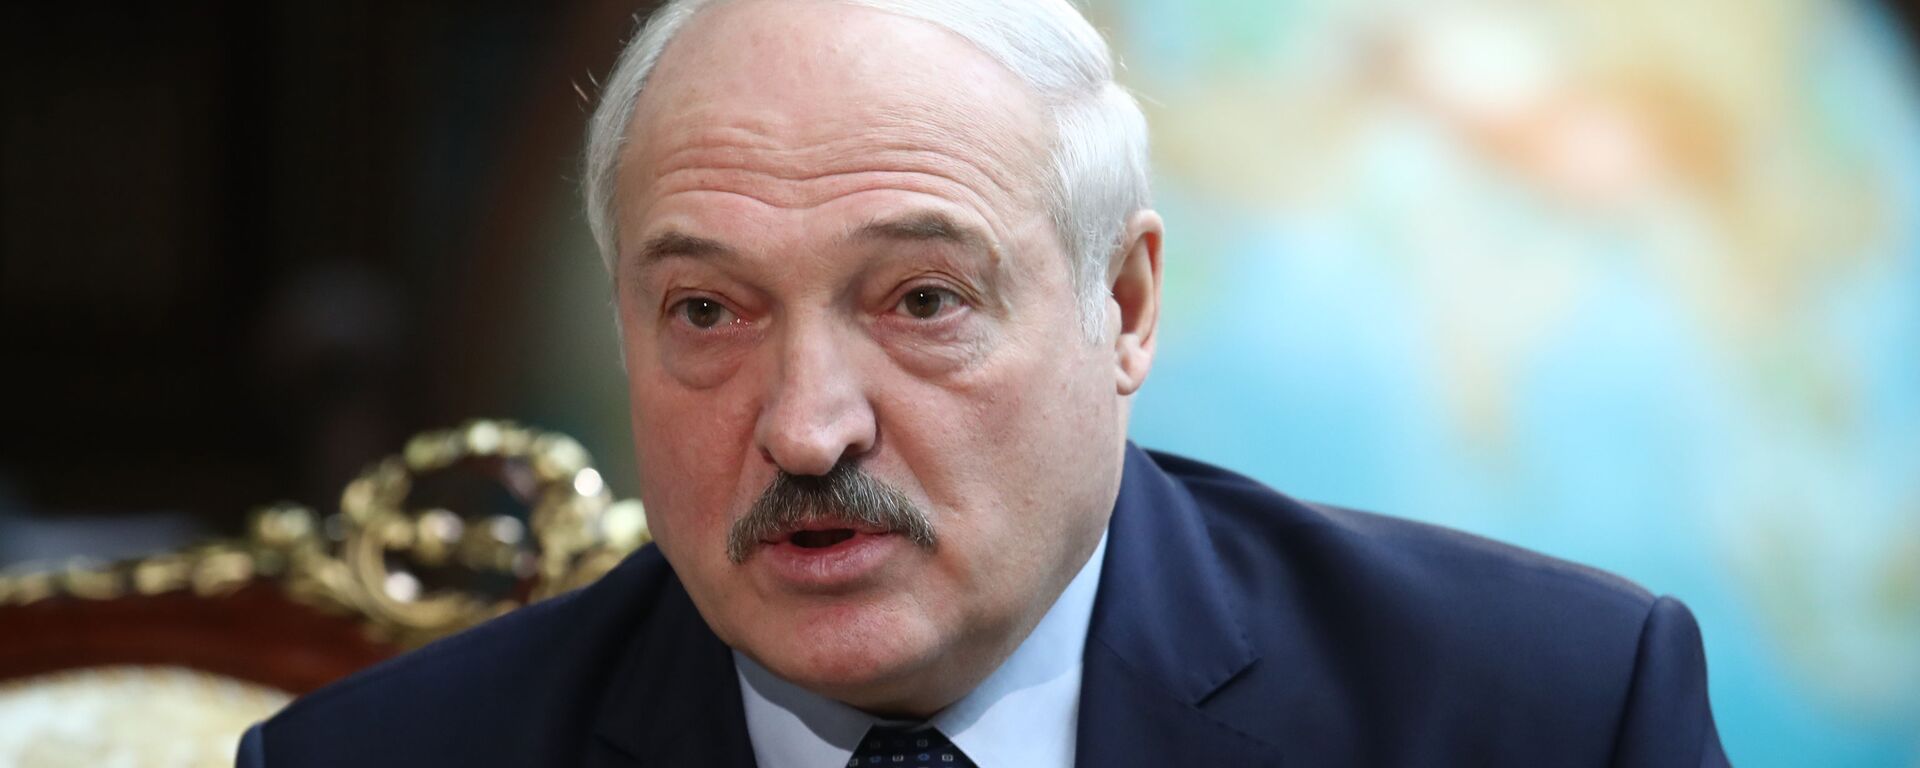 Alexandr Lukashenko, presidente de Bielorrusia  - Sputnik Mundo, 1920, 06.07.2021